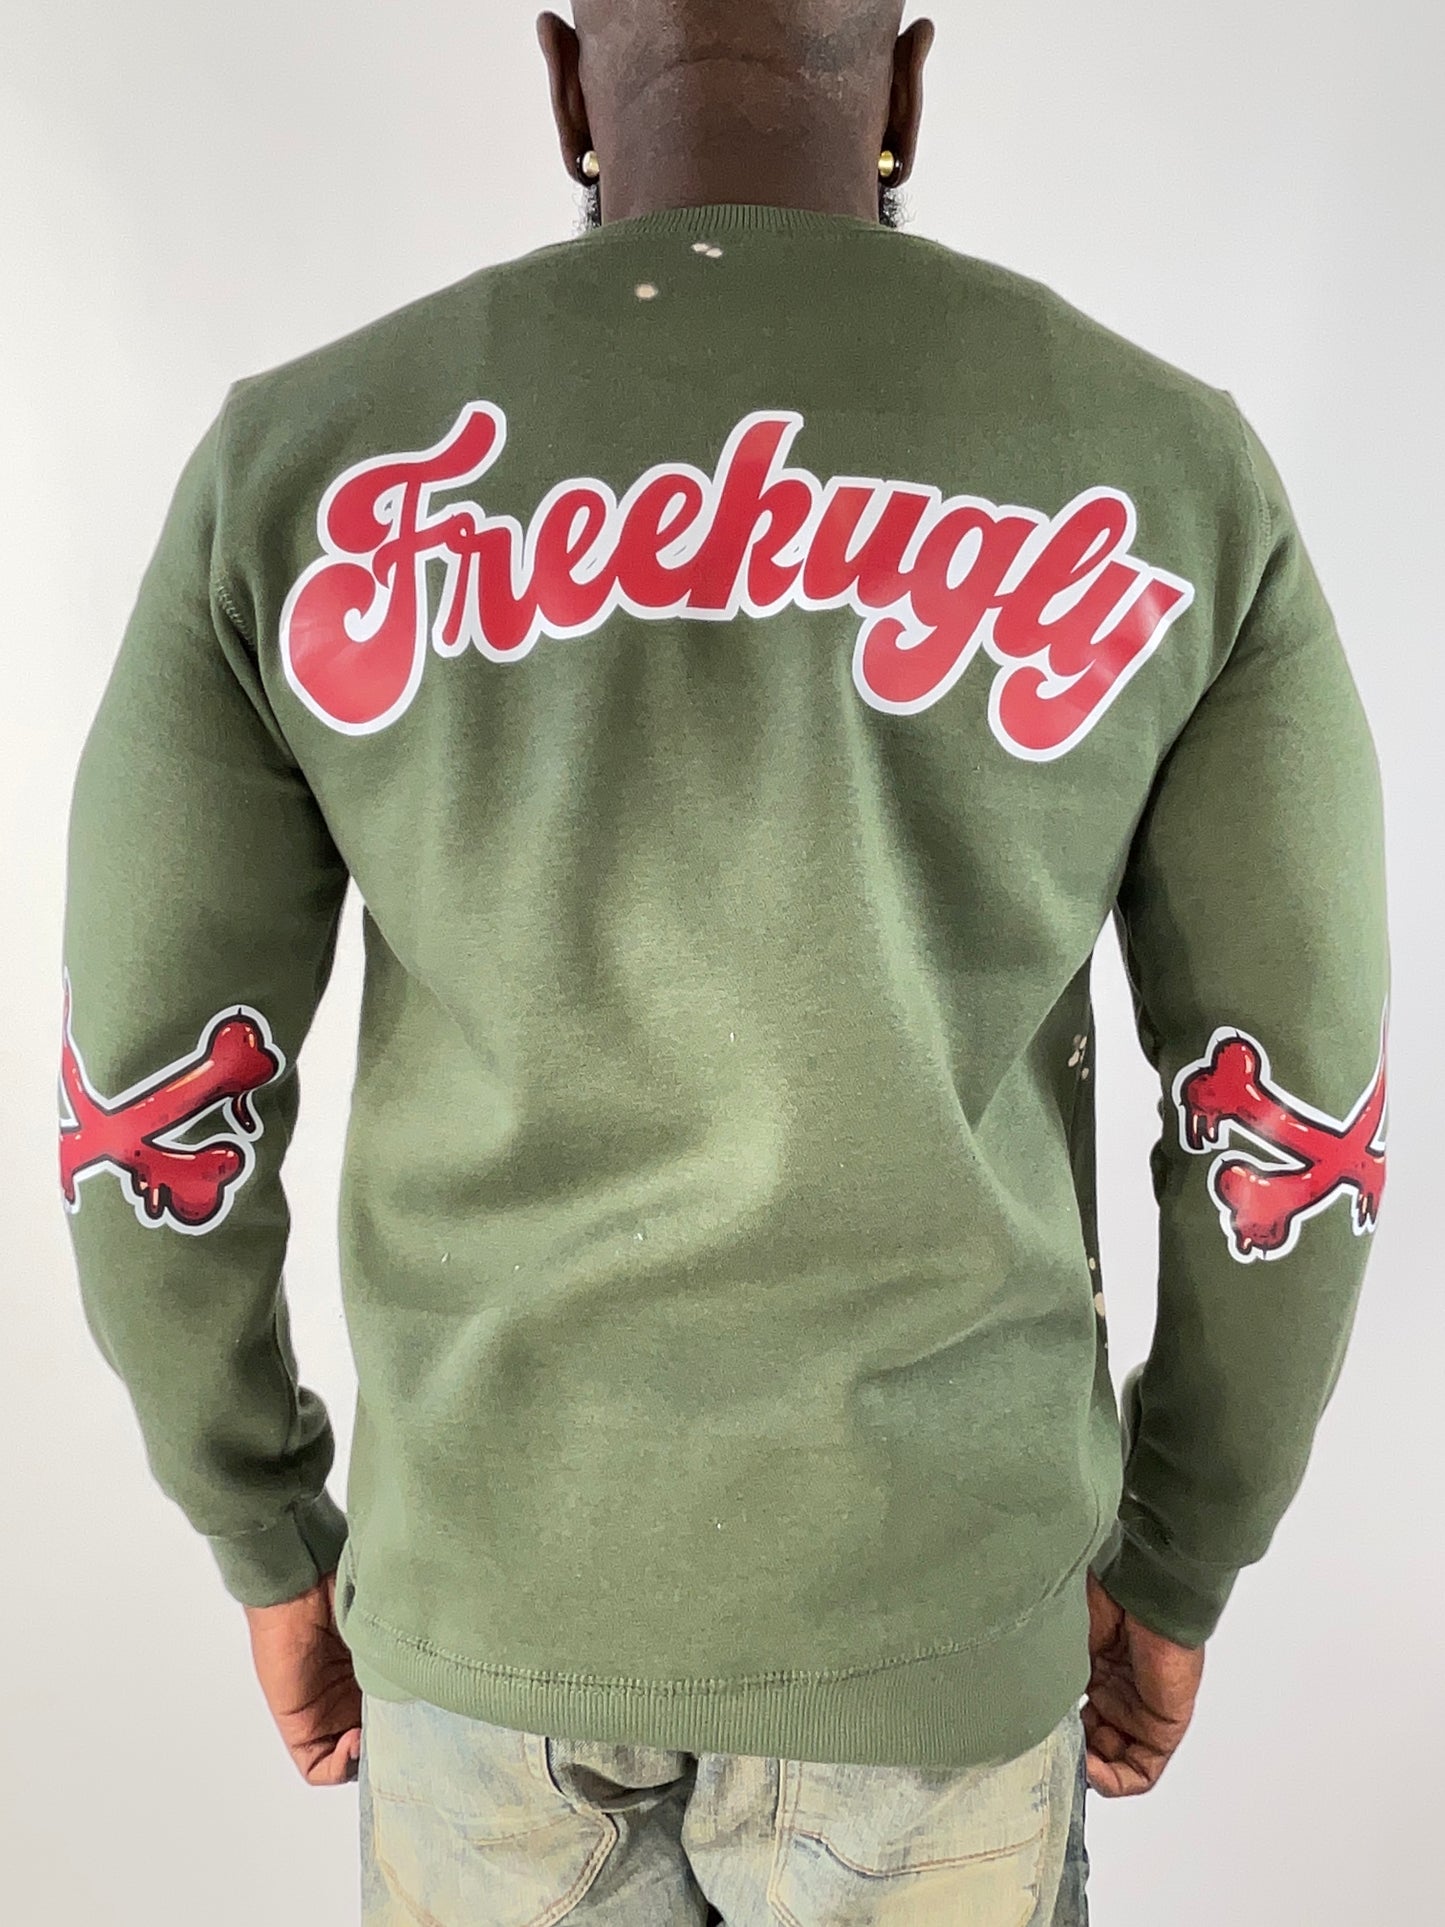 Burg Character Crewneck Sweatshirt by Freekugly